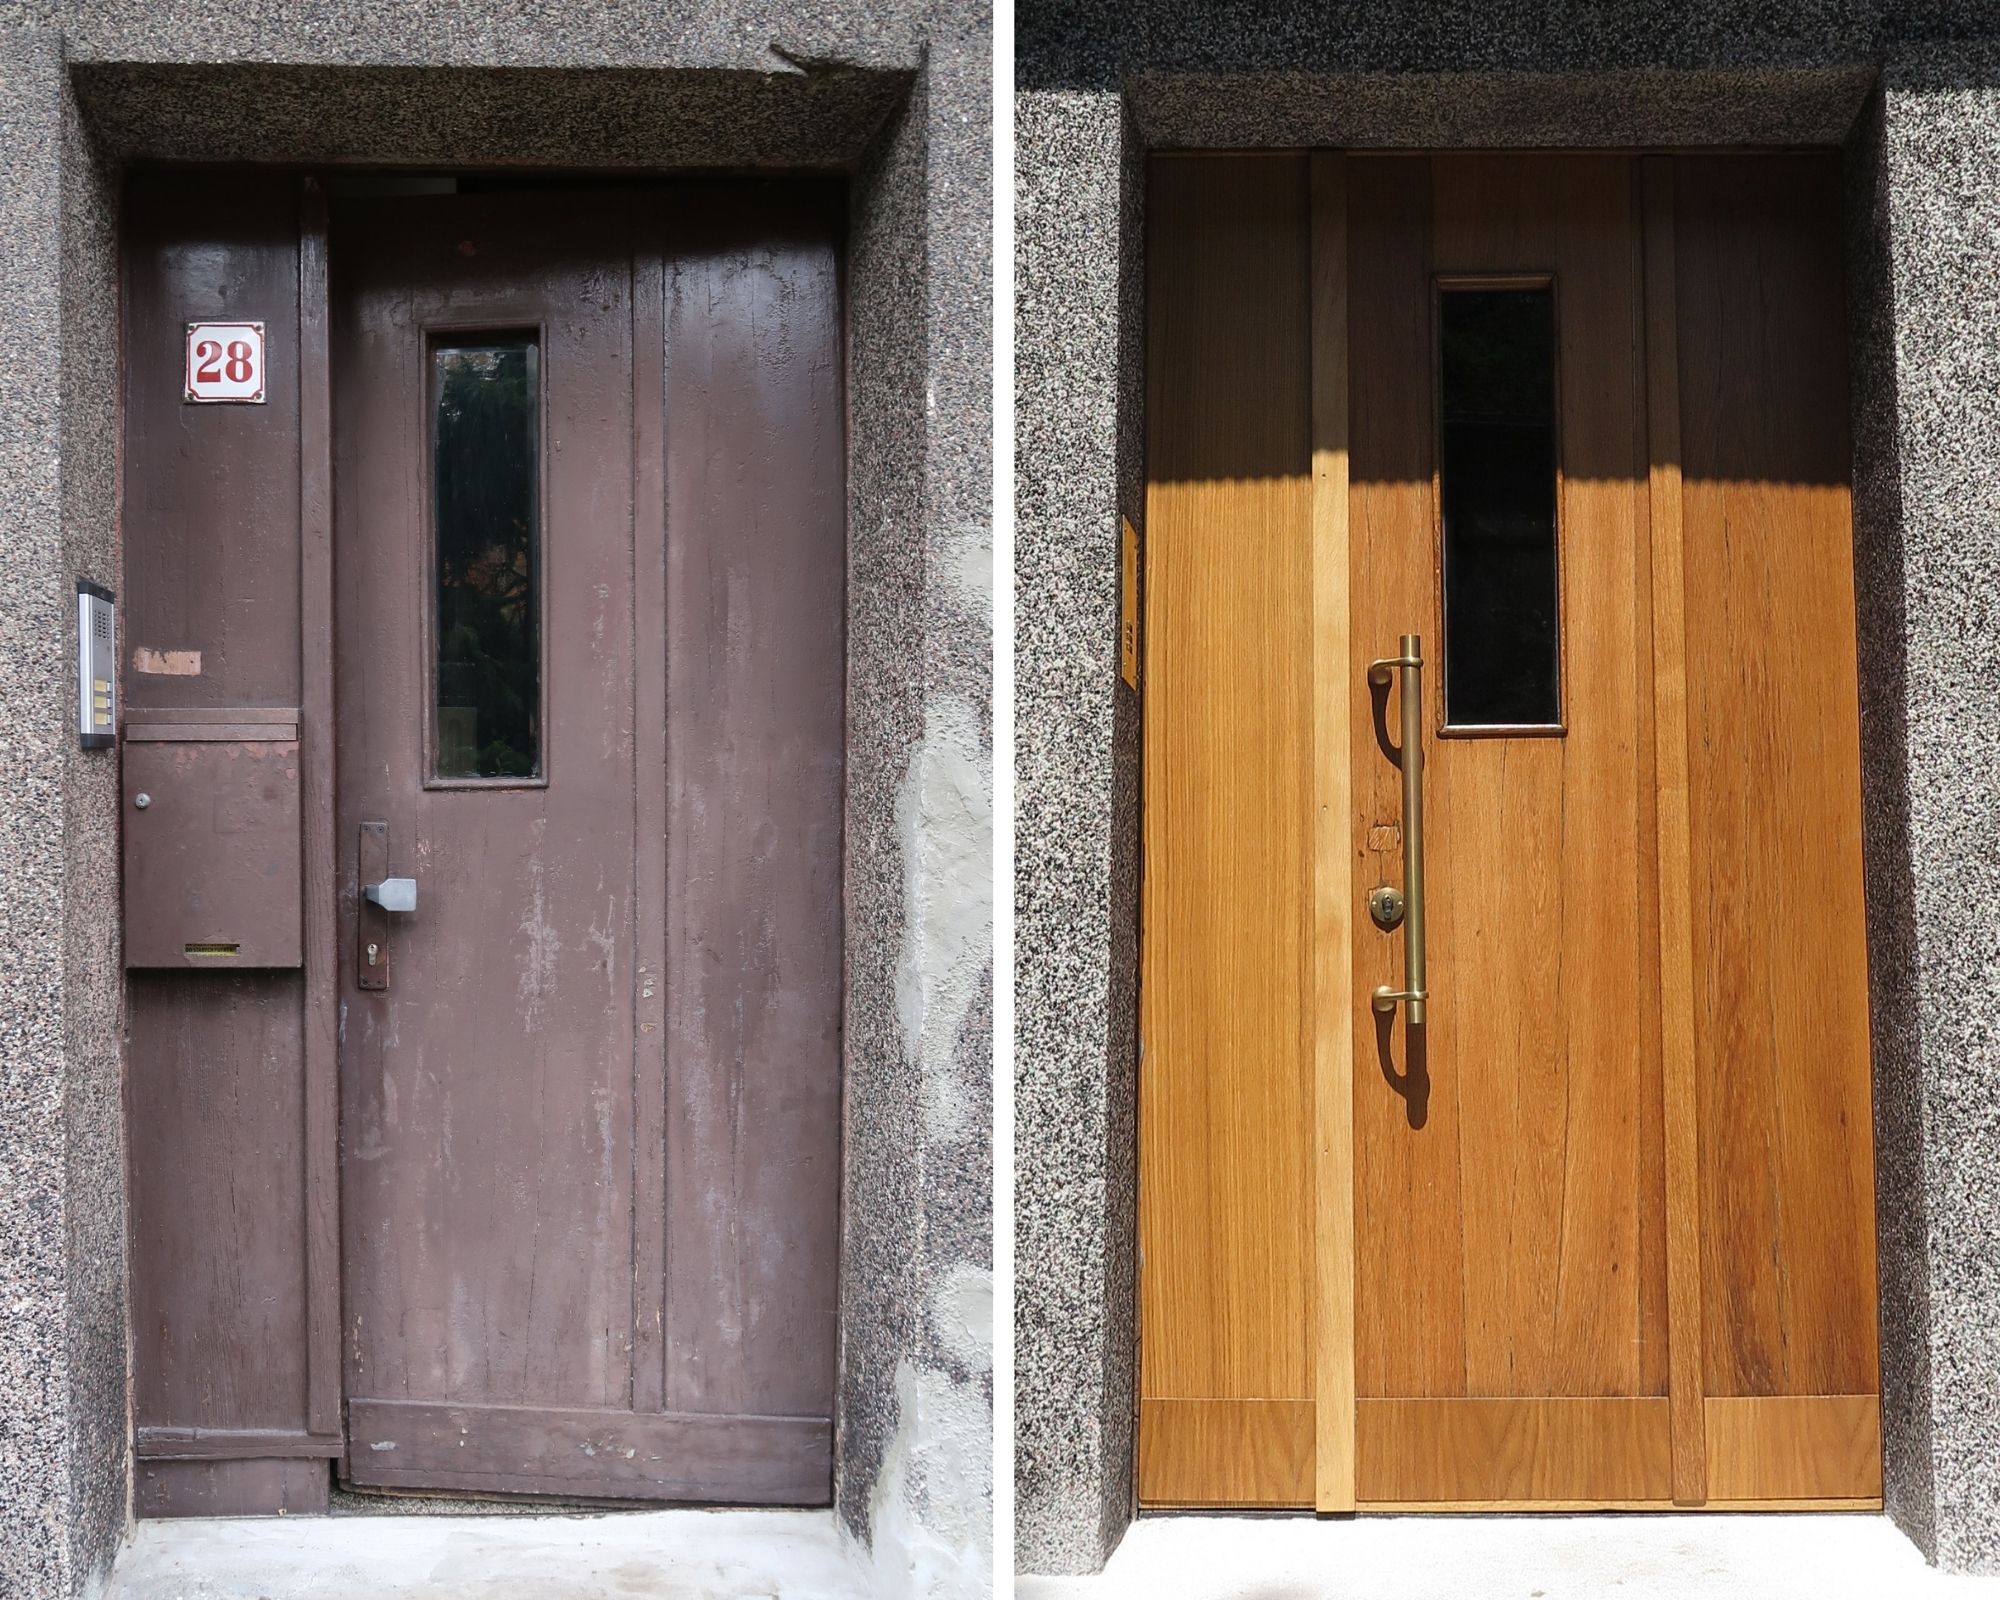 Drzwi do budynku przy ul. Olsztyńskiej 28 przed i po pracach konserwatorskich, fot. Biuro Miejskiego Konserwatora Zabytków w Gdyni